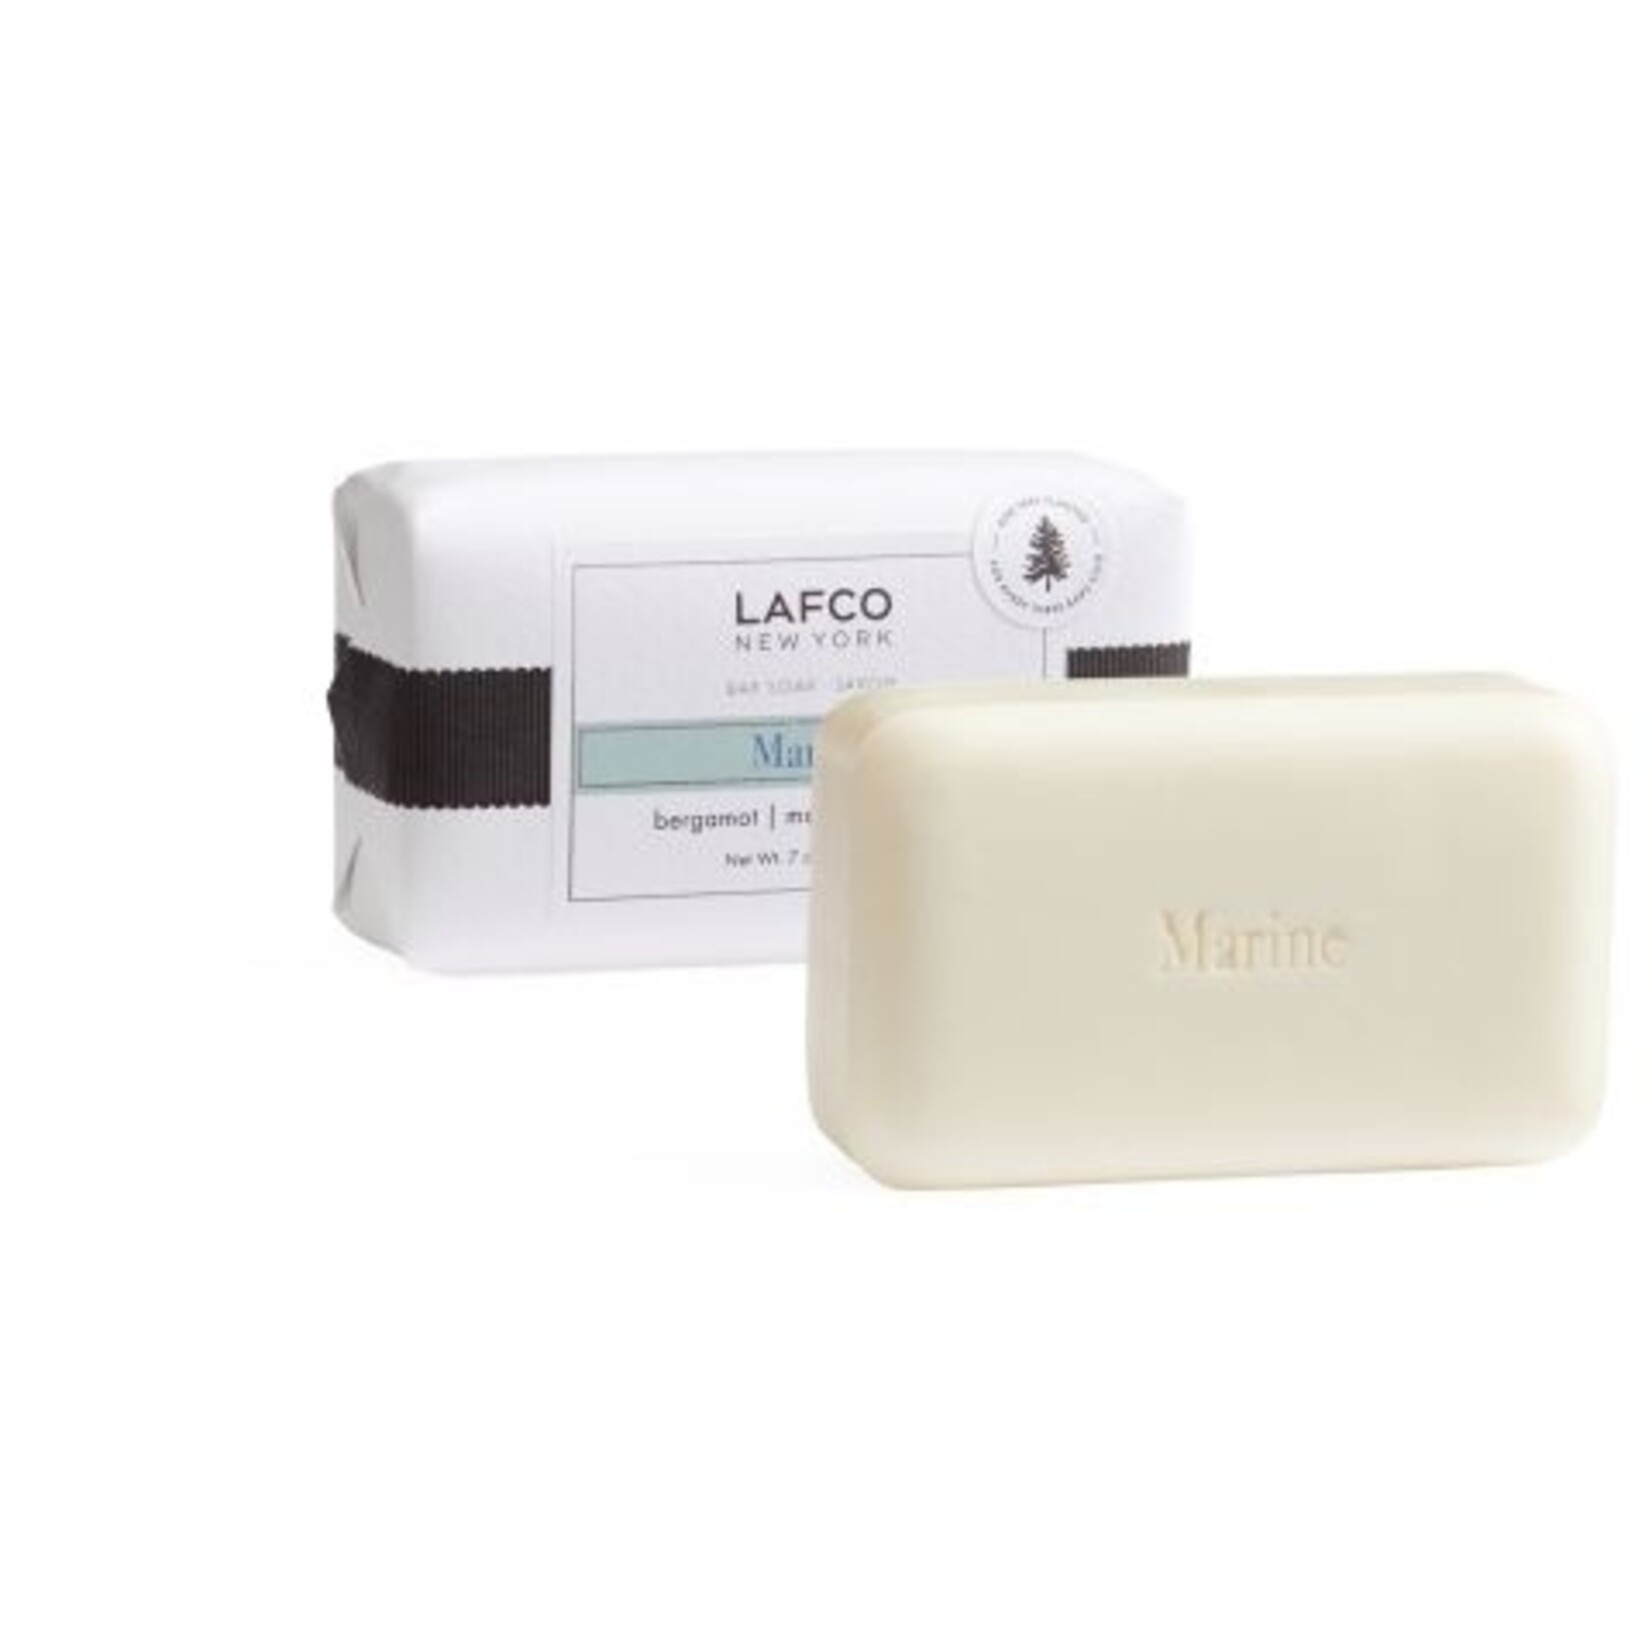 LAFCO LAFCO  Marine Bar Soap 7 oz